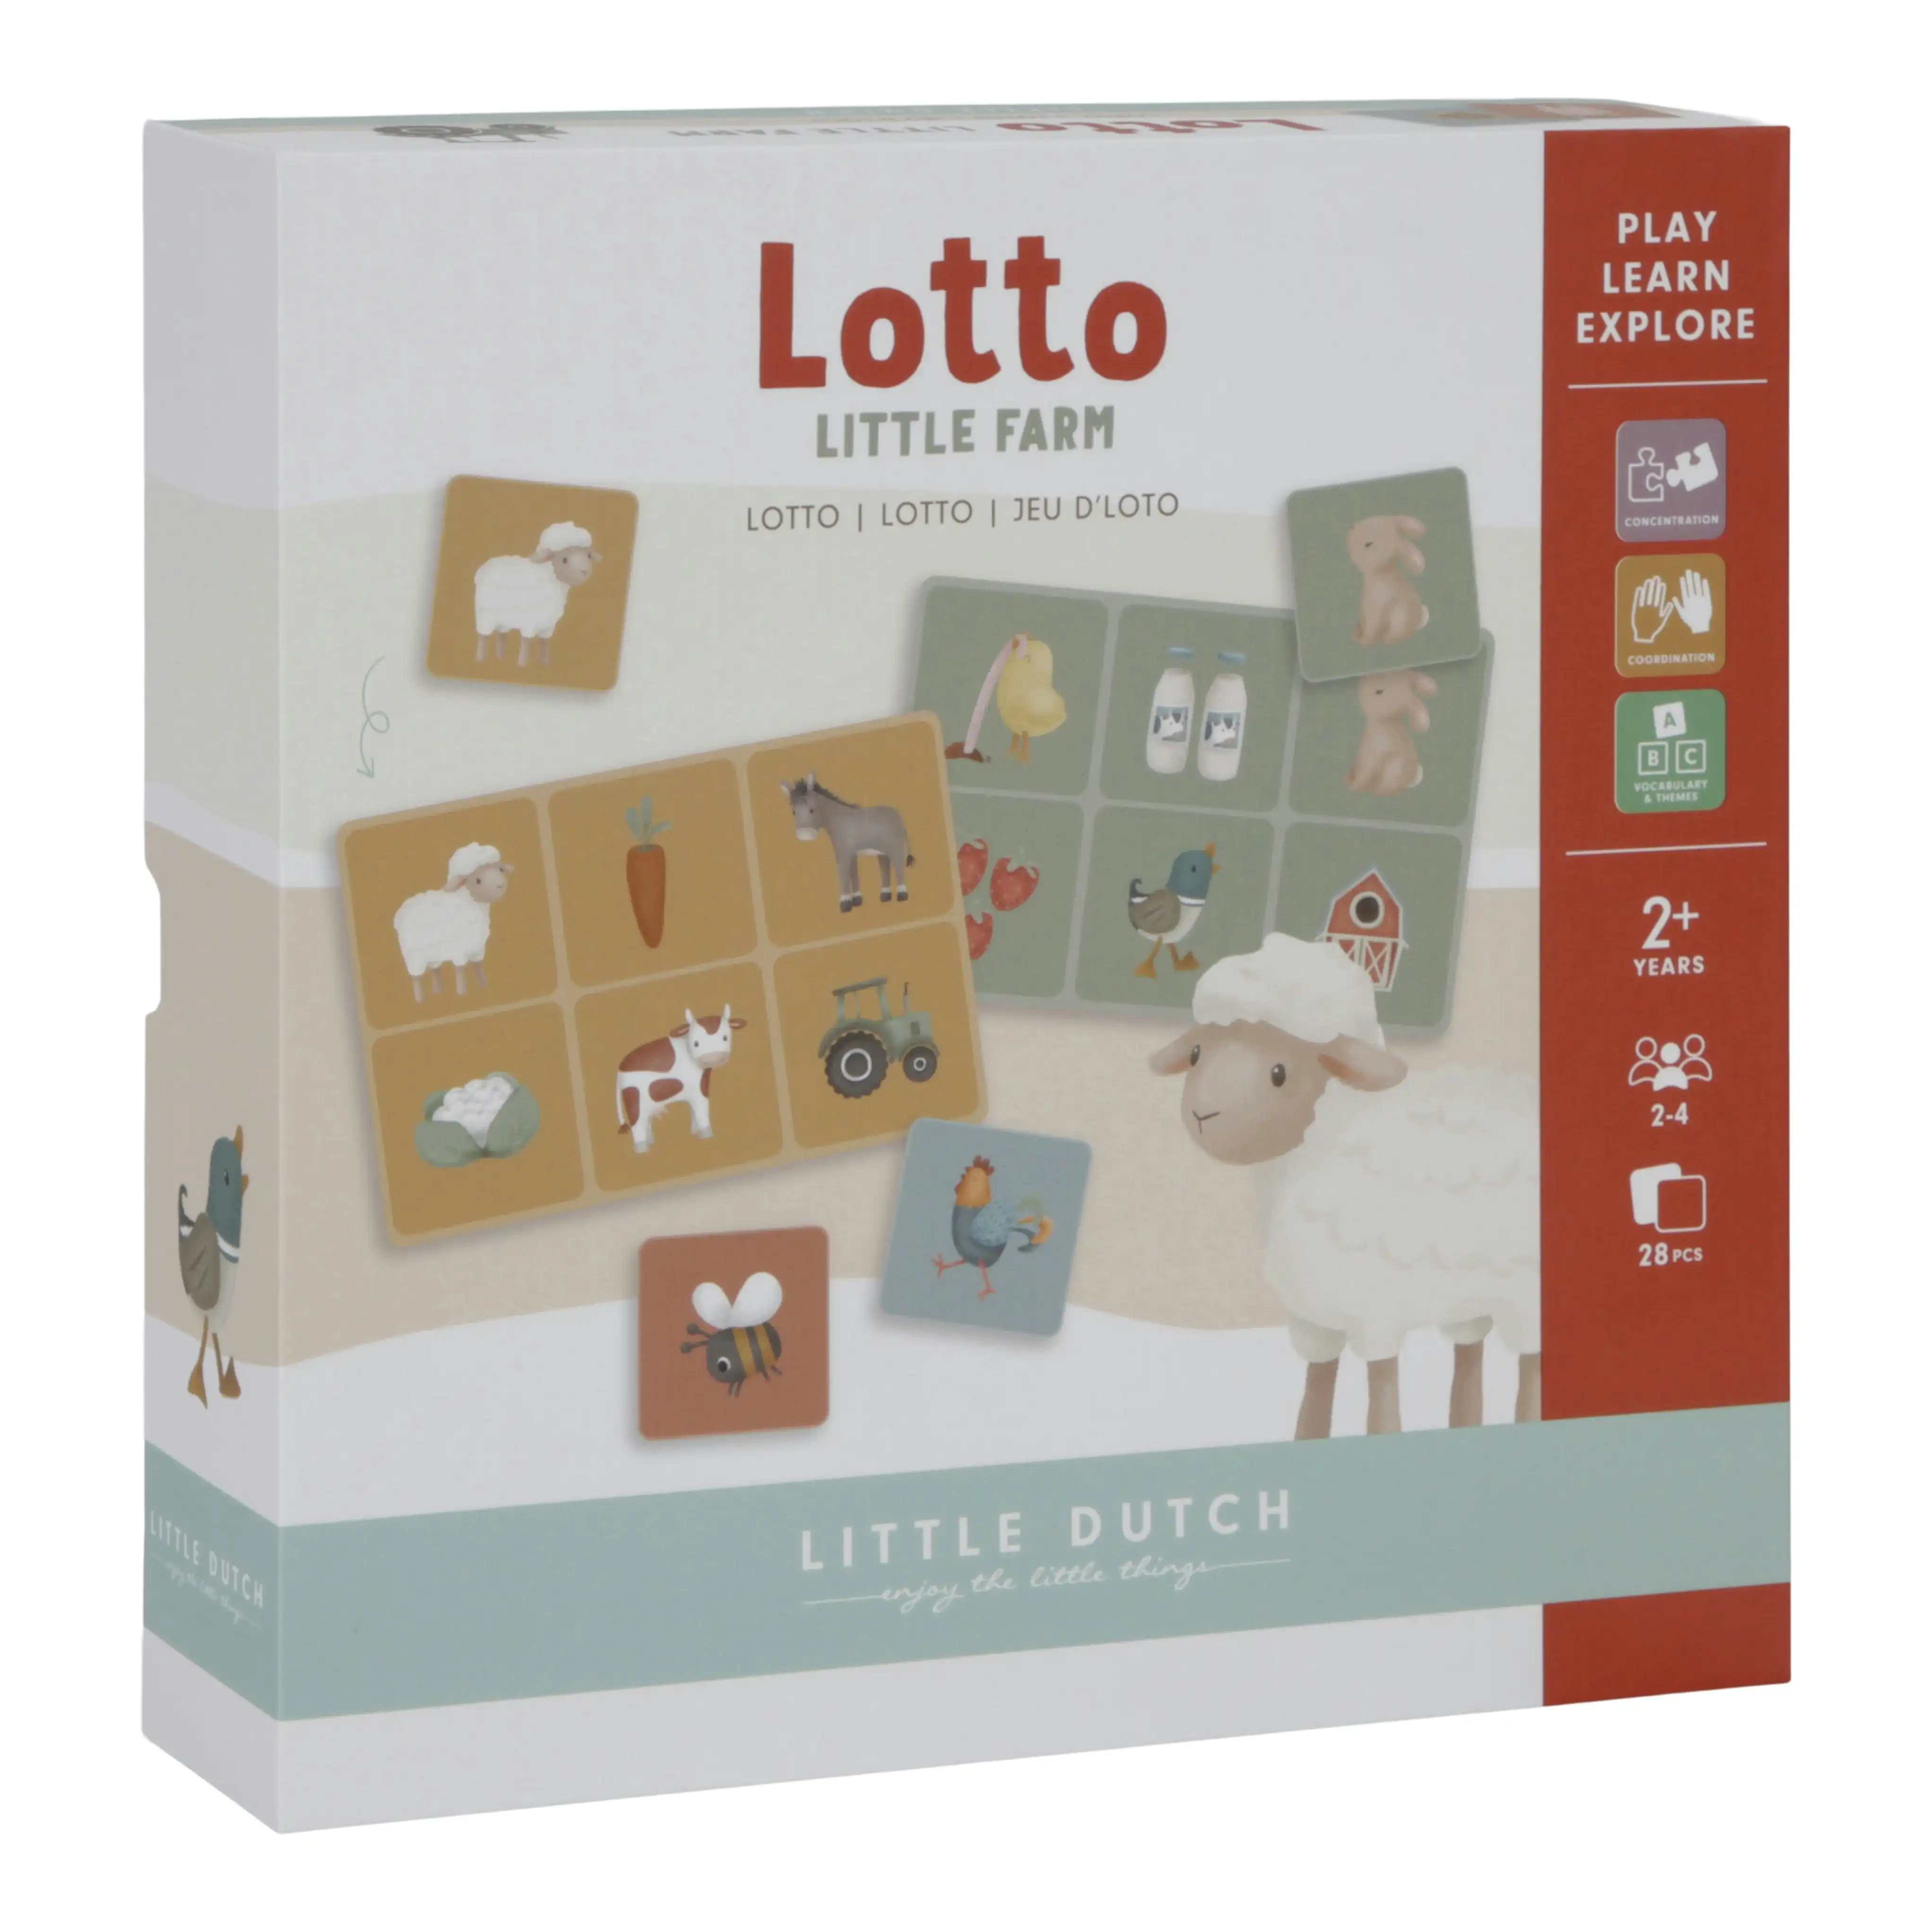 Little Dutch Little Farm Lotto Kids Game Board